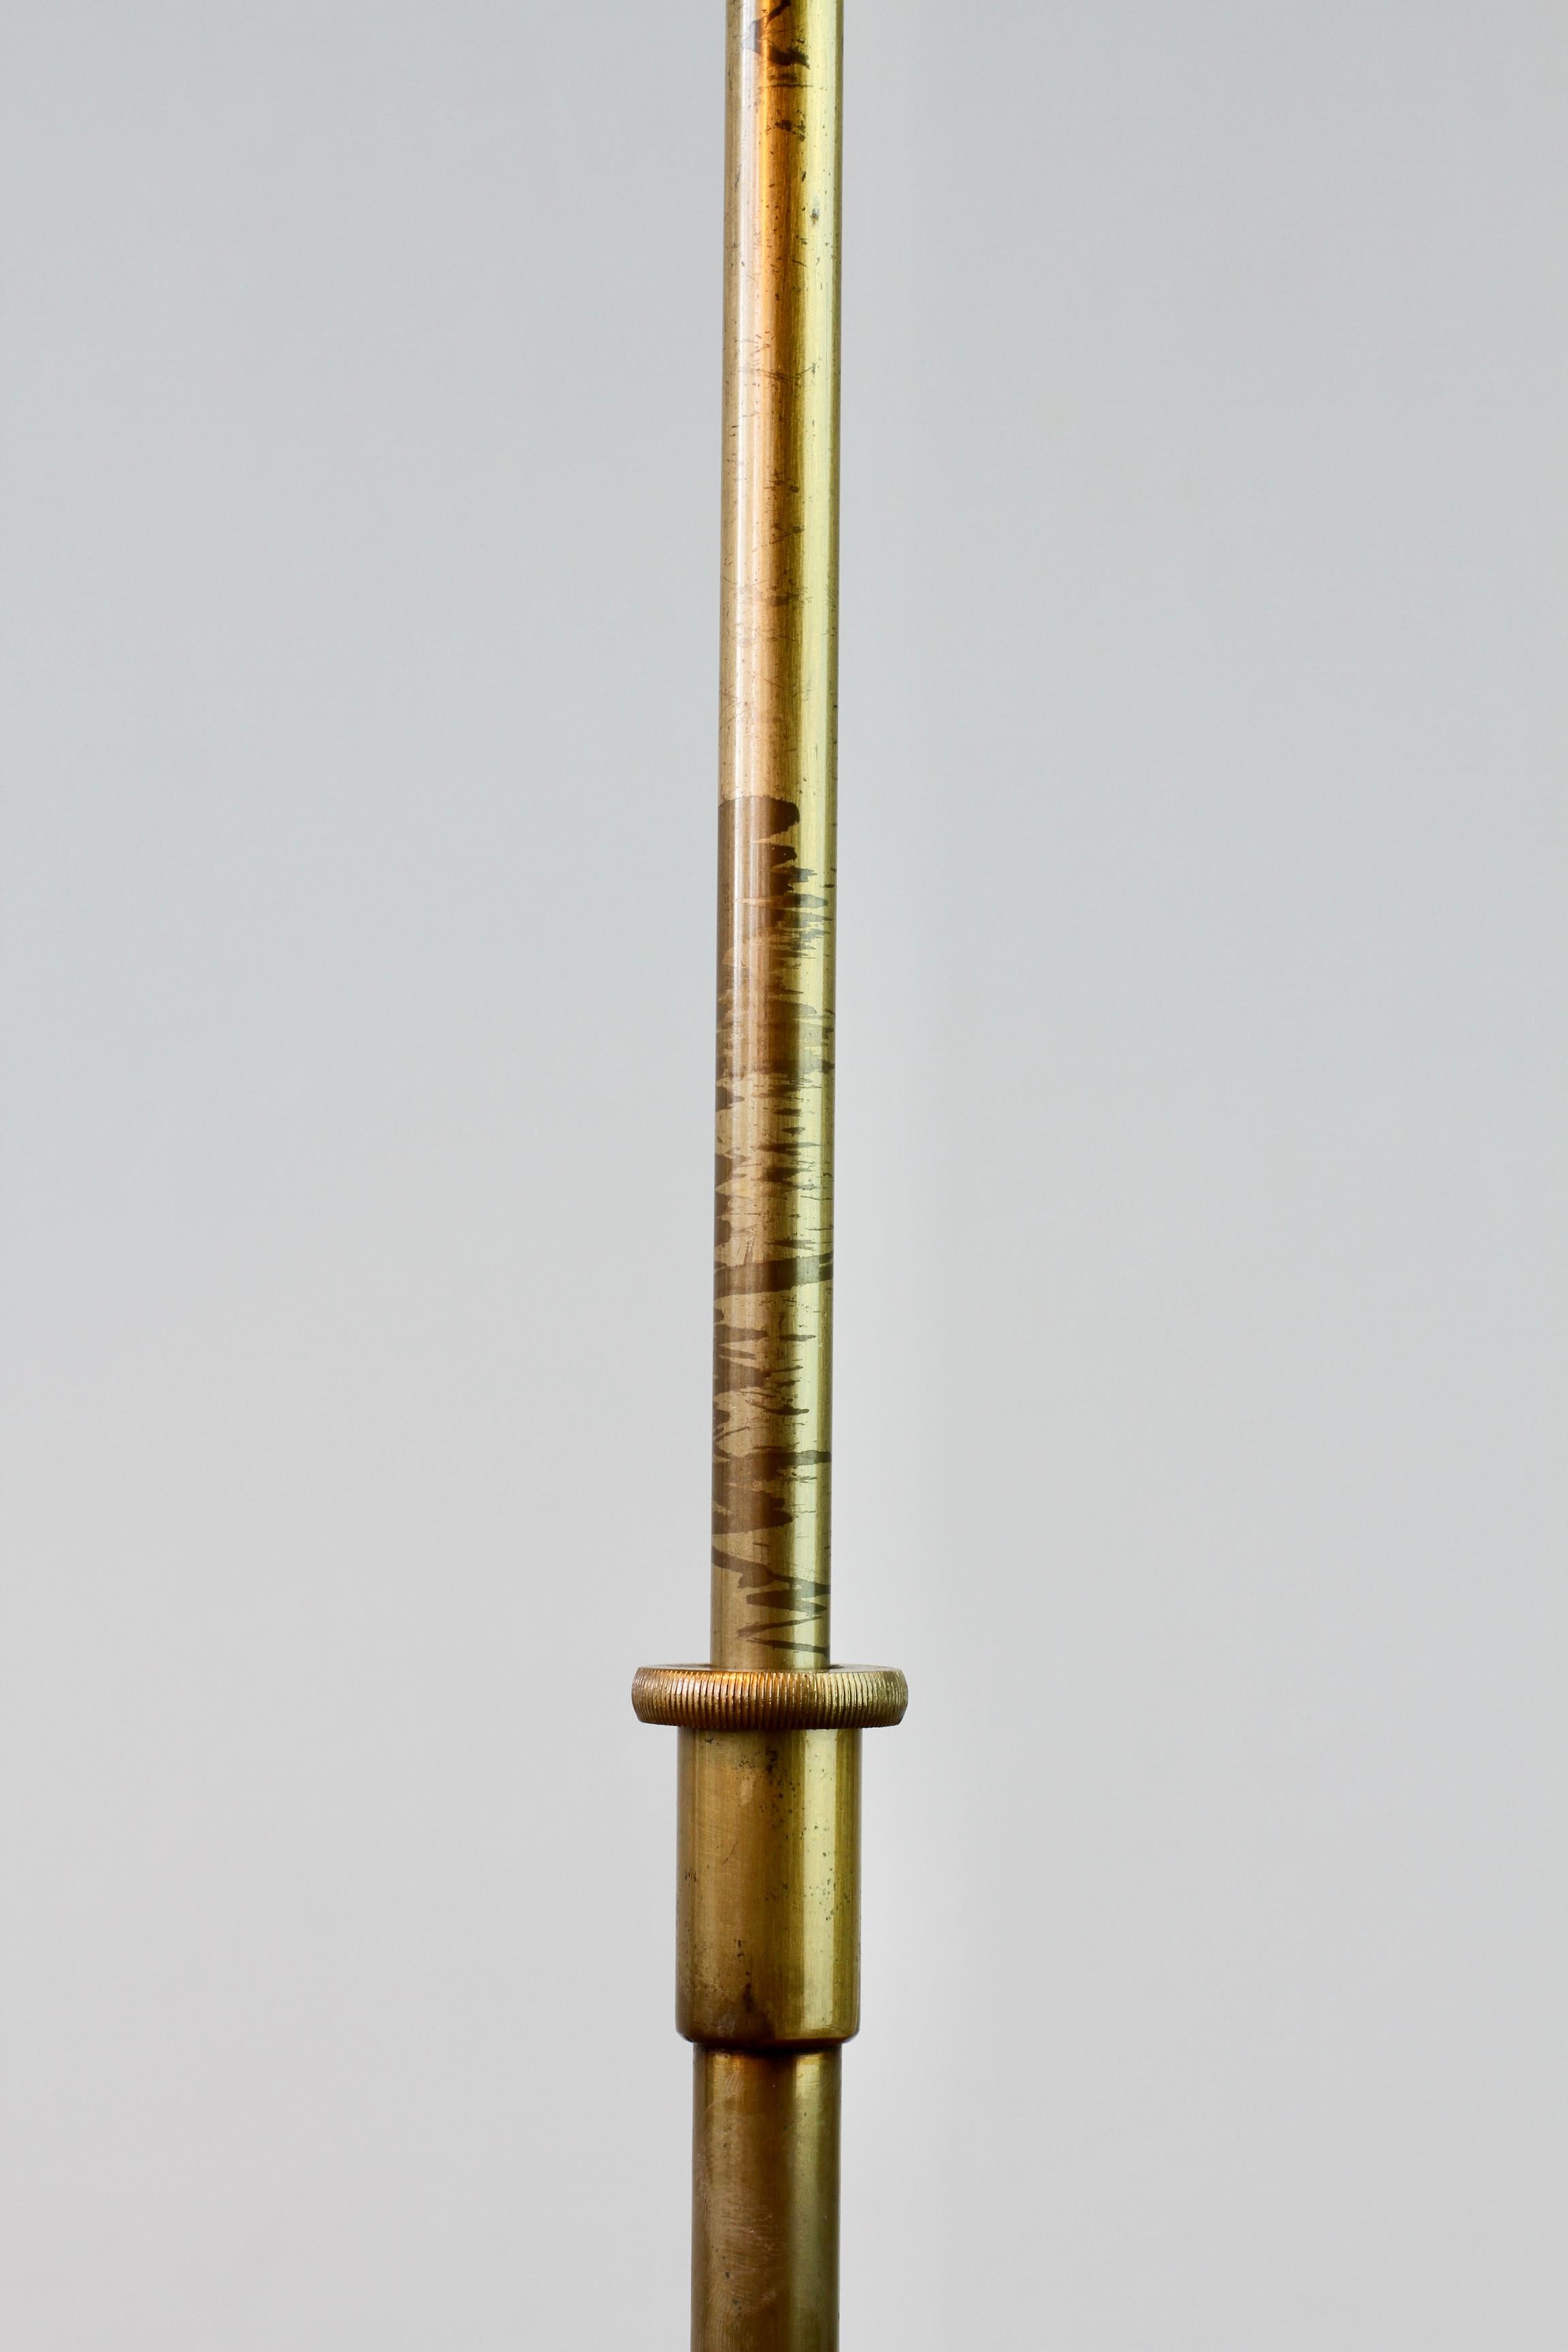 Florian Schulz Vintage Modernist Brushed Brass Adjustable Floor Lamp, circa 1985 For Sale 4